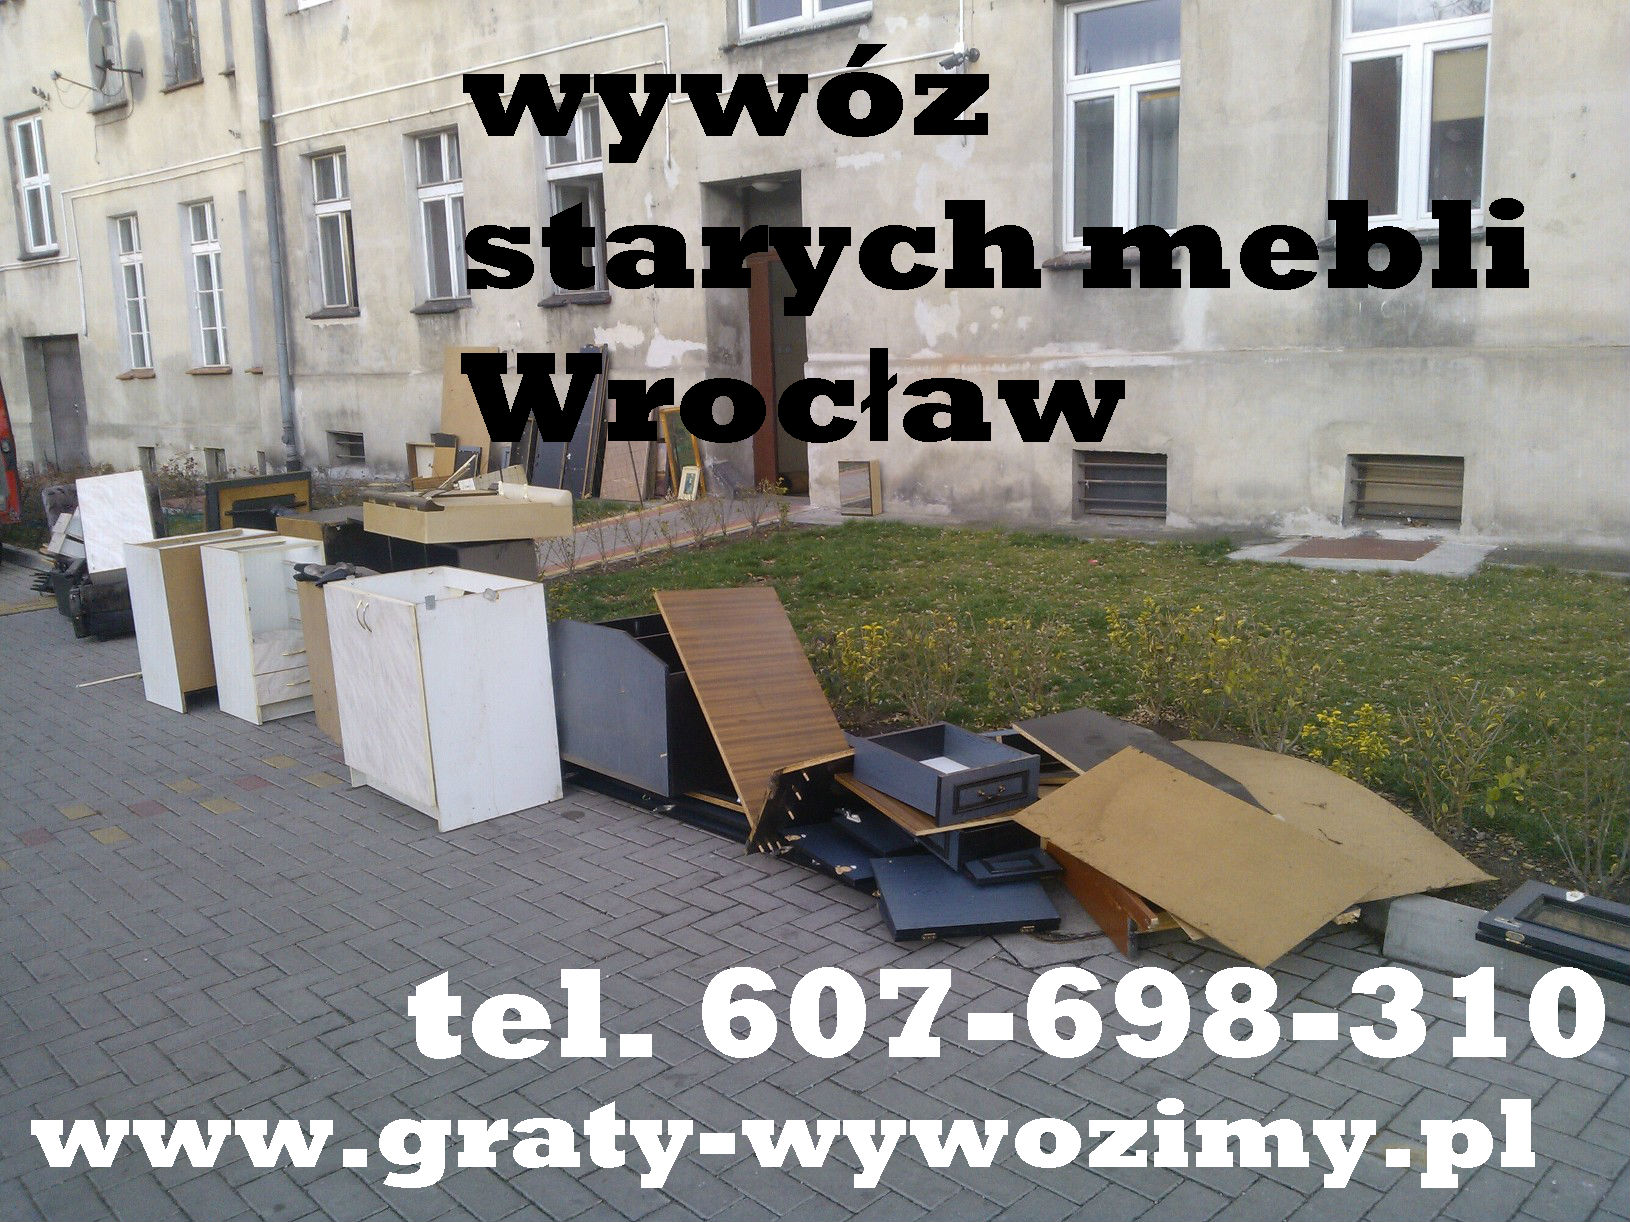 odbiór,wywóz starych mebli Wrocław,utylizacja,opróżnianie mieszkań,piwnic Wrocław